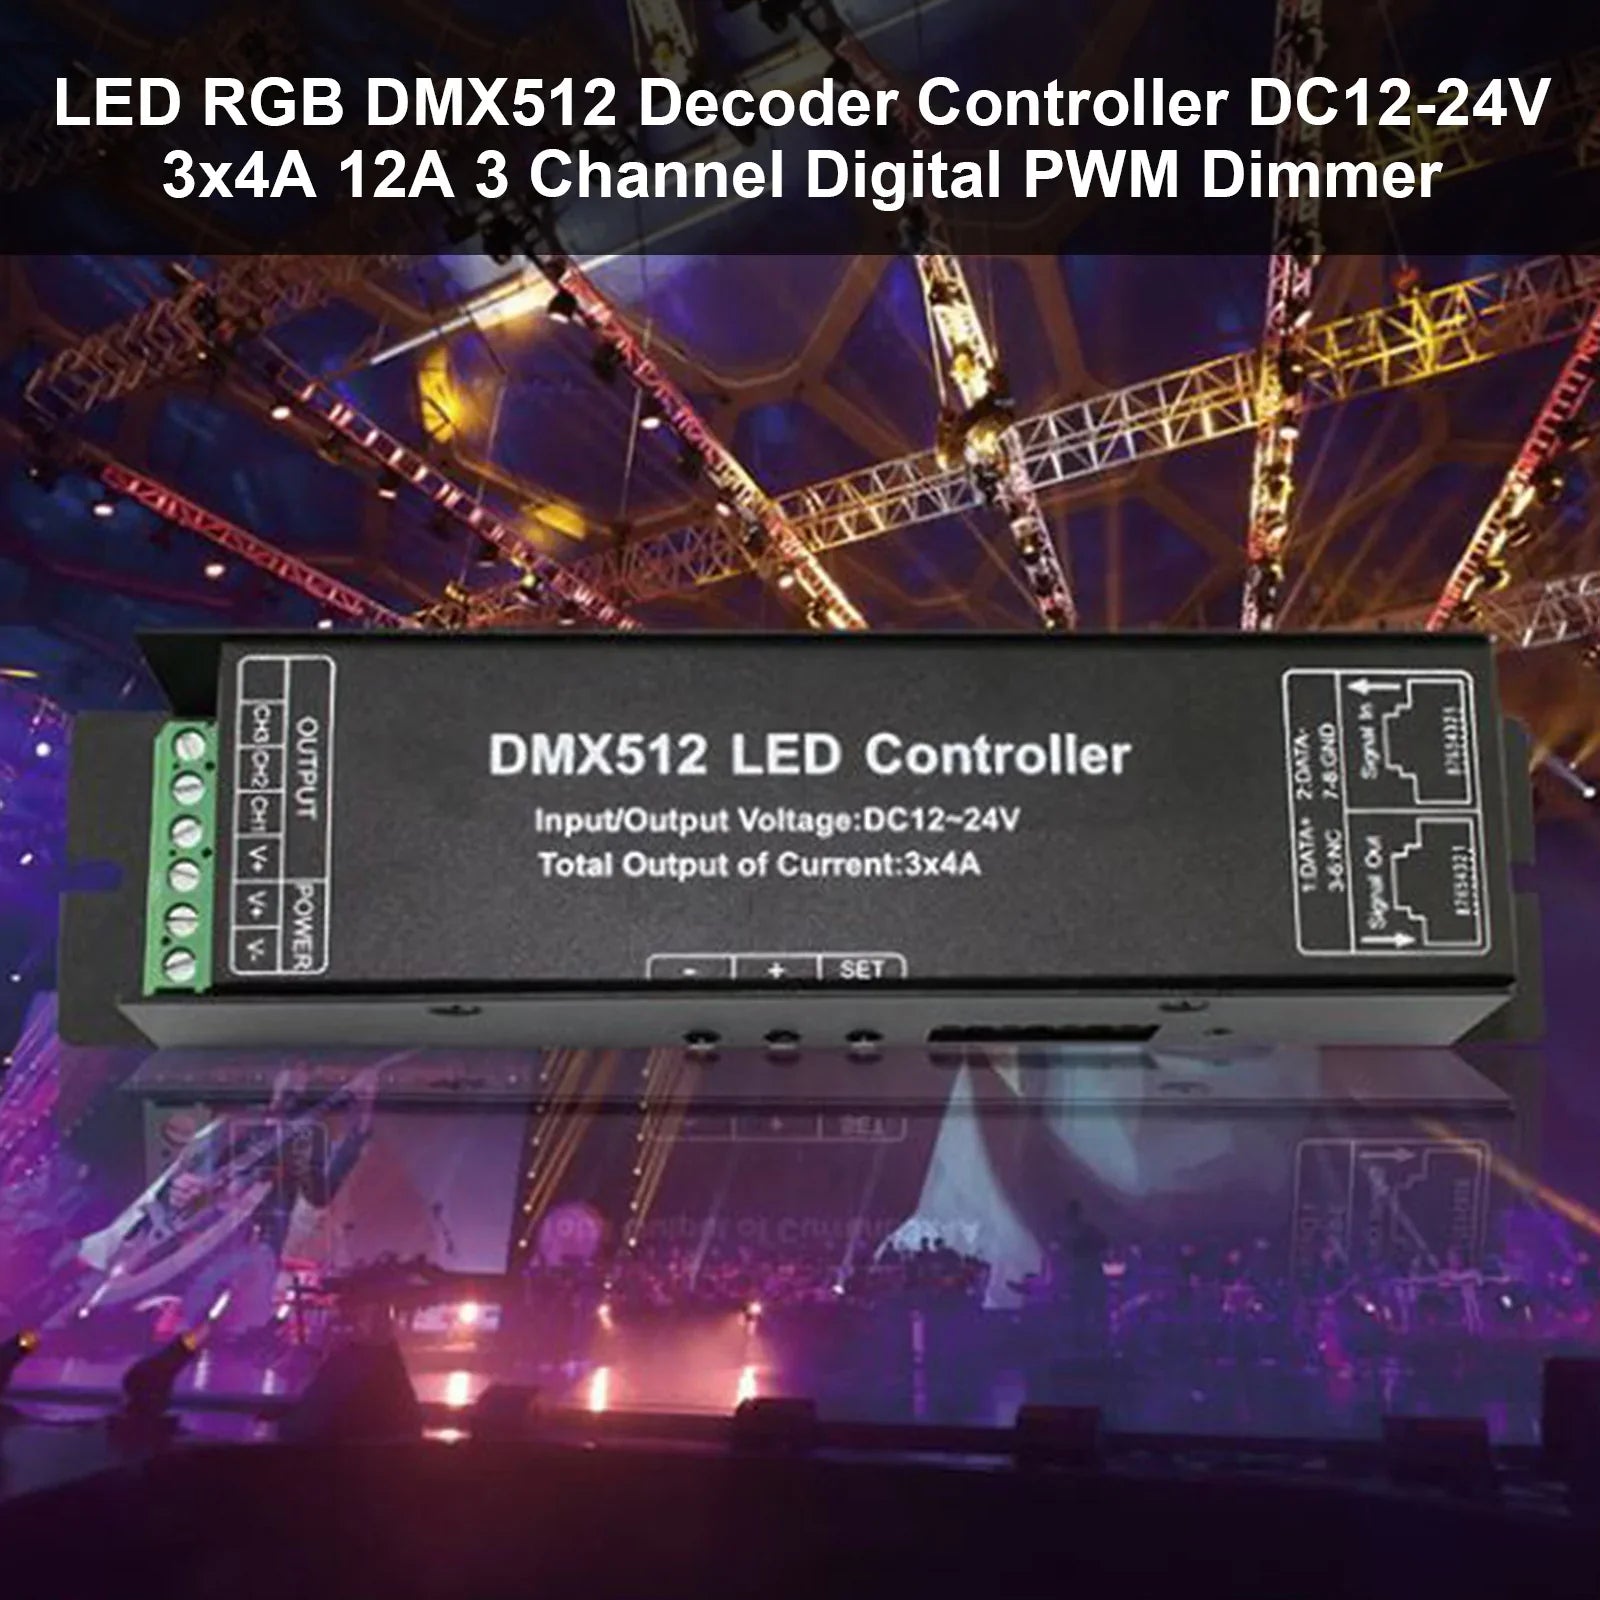 DC12-24V 3x4A 12A RGB DMX512 LED Decoder Controller 3 canali Digital PWM Dimmer